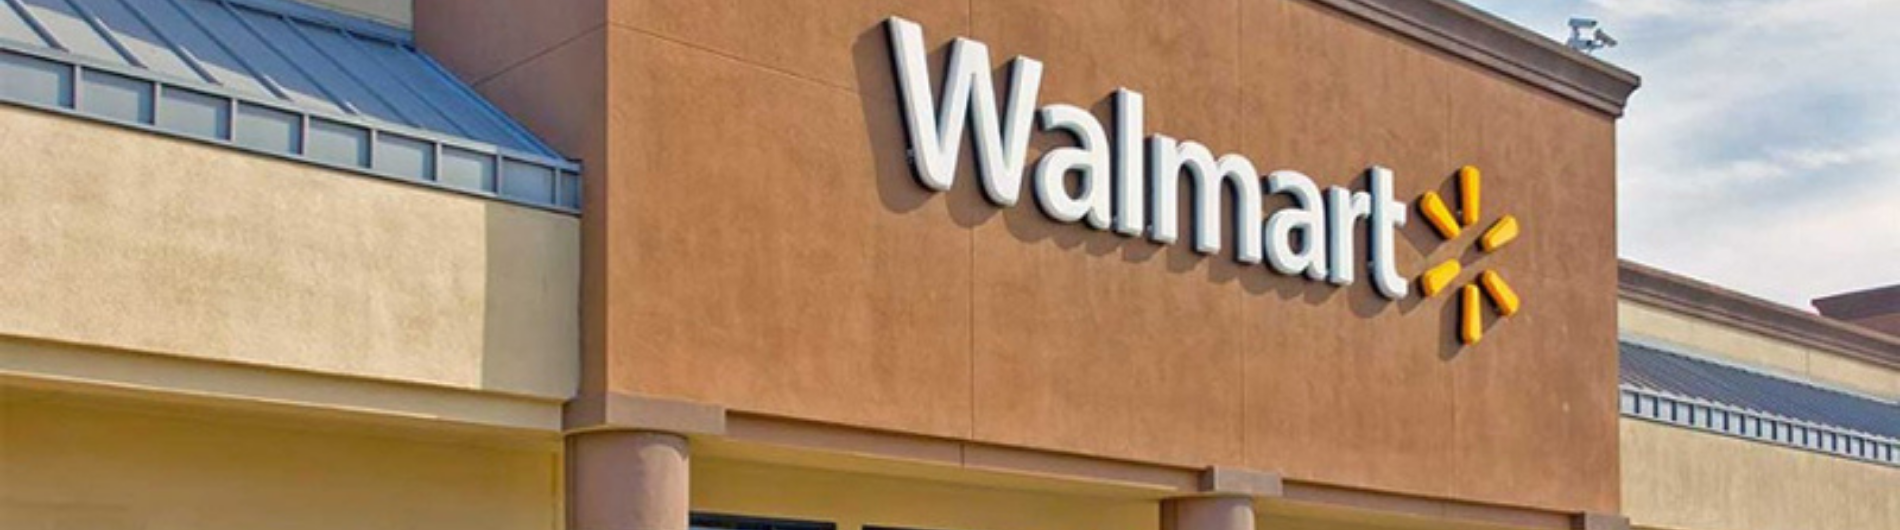 Walmart de México y Centroamérica impulsa expansión en el Estado de México con inversión millonaria